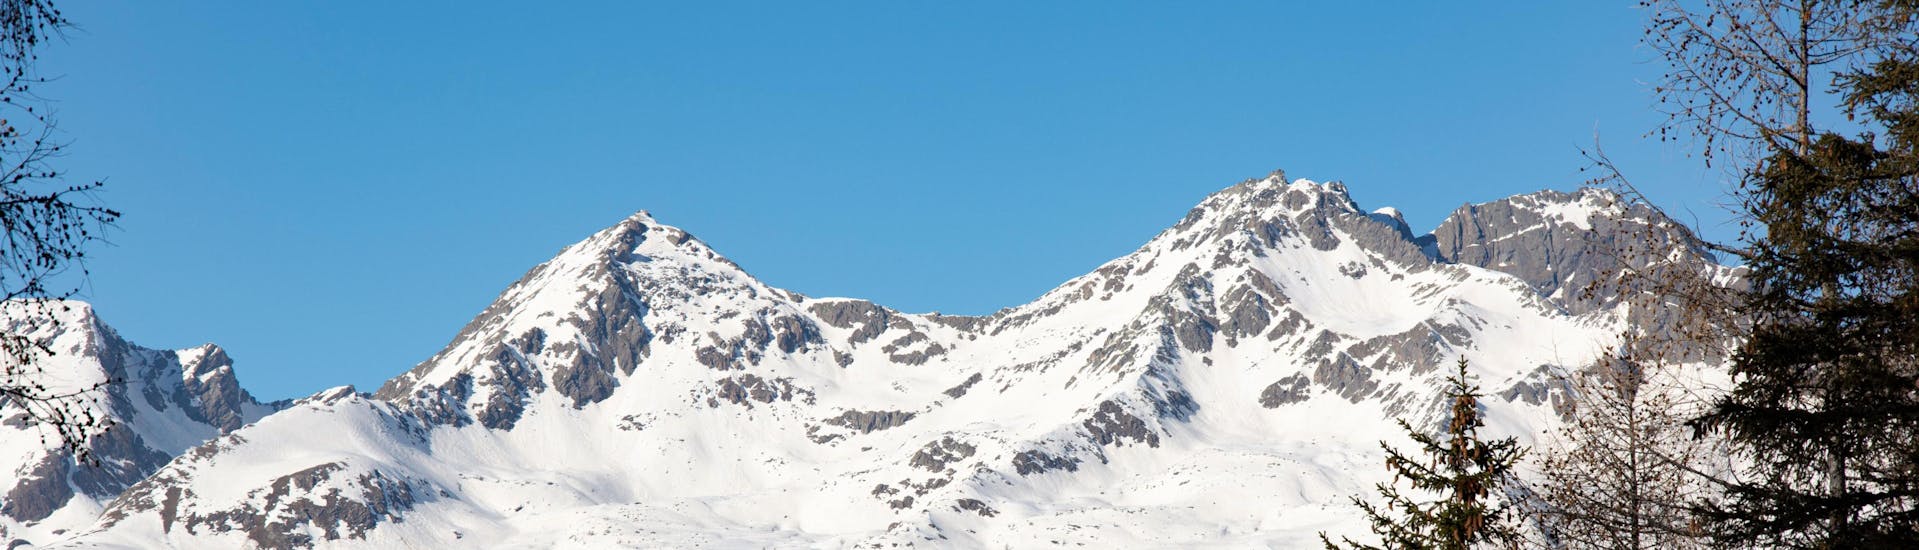 Winters landschap van de pistes van Val di Sole, waar u skilessen kunt boeken.